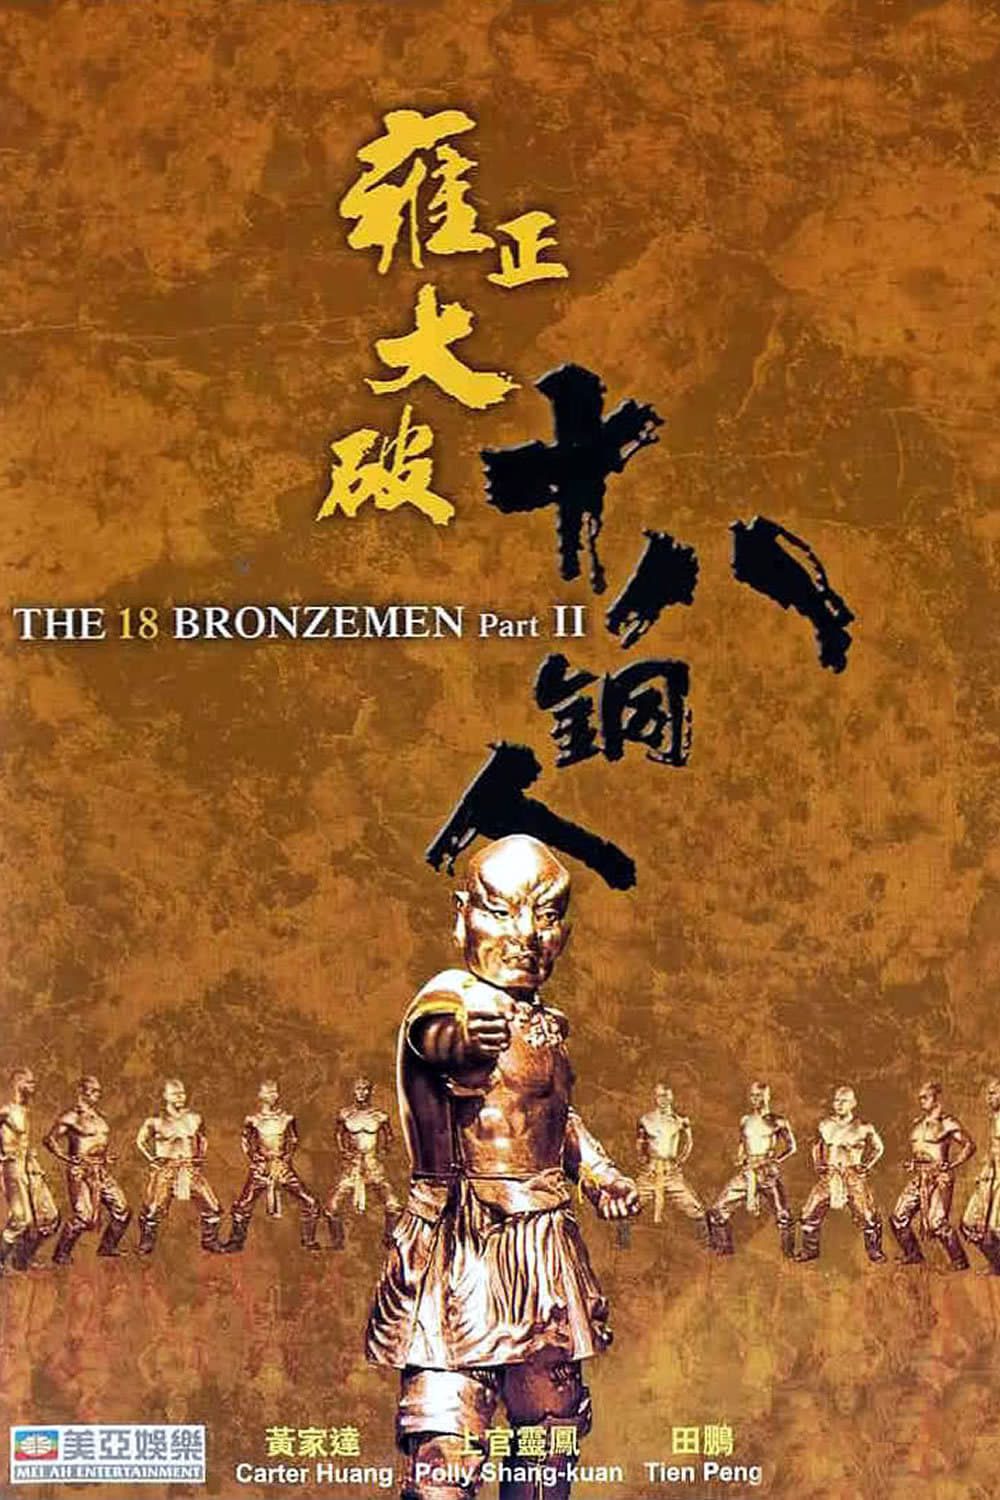 ดูหนังออนไลน์ฟรี Return of the 18 Bronzemen 18 ยอดมนุษย์ทองคำ